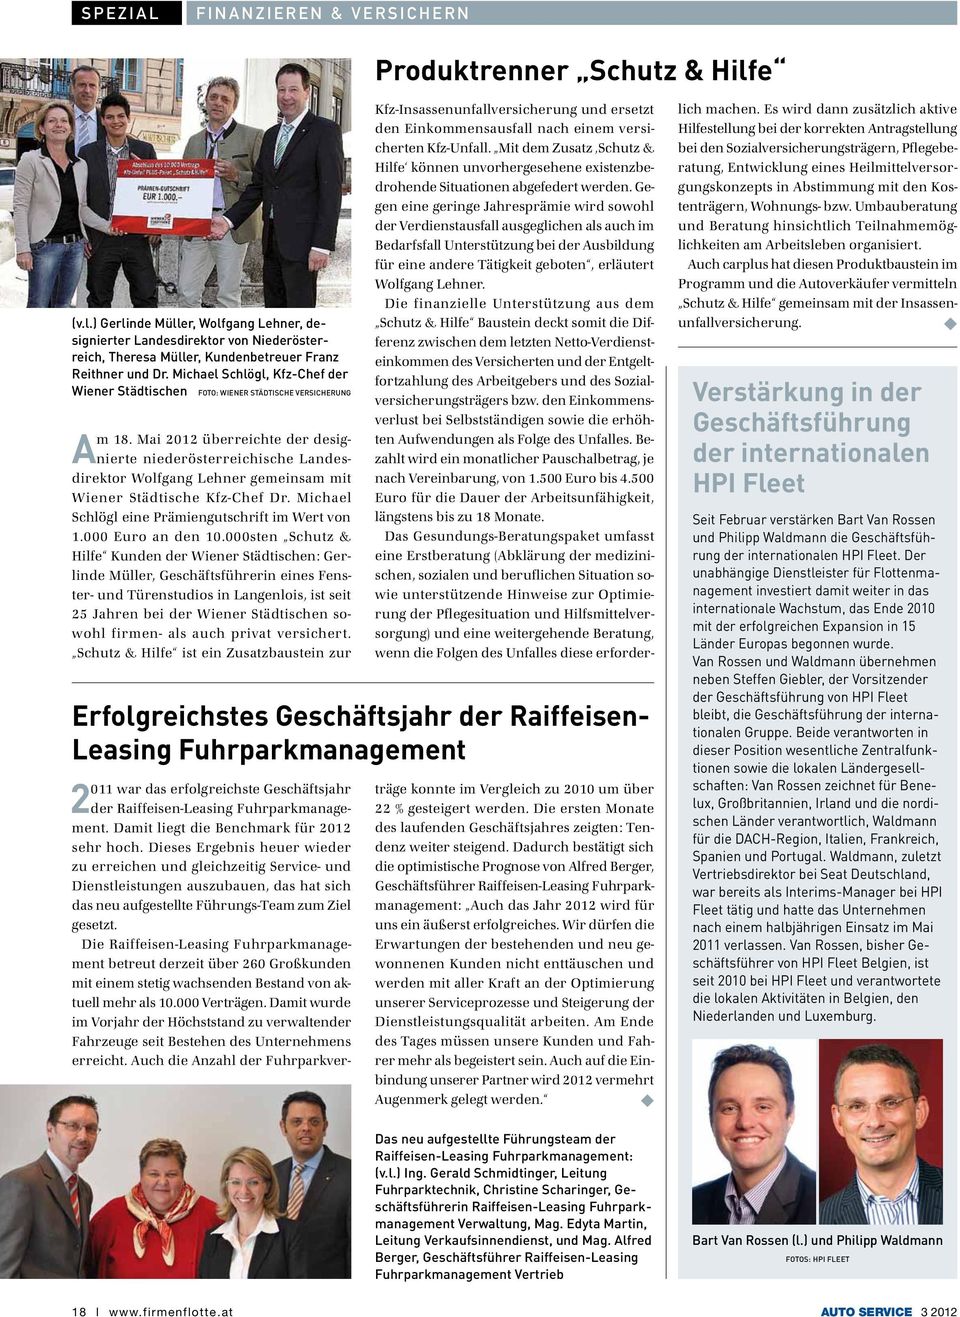 Mai 2012 überreichte der designierte niederösterreichische Landesdirektor Wolfgang Lehner gemeinsam mit Wiener Städtische Kfz-Chef Dr. Michael Schlögl eine Prämiengutschrift im Wert von 1.